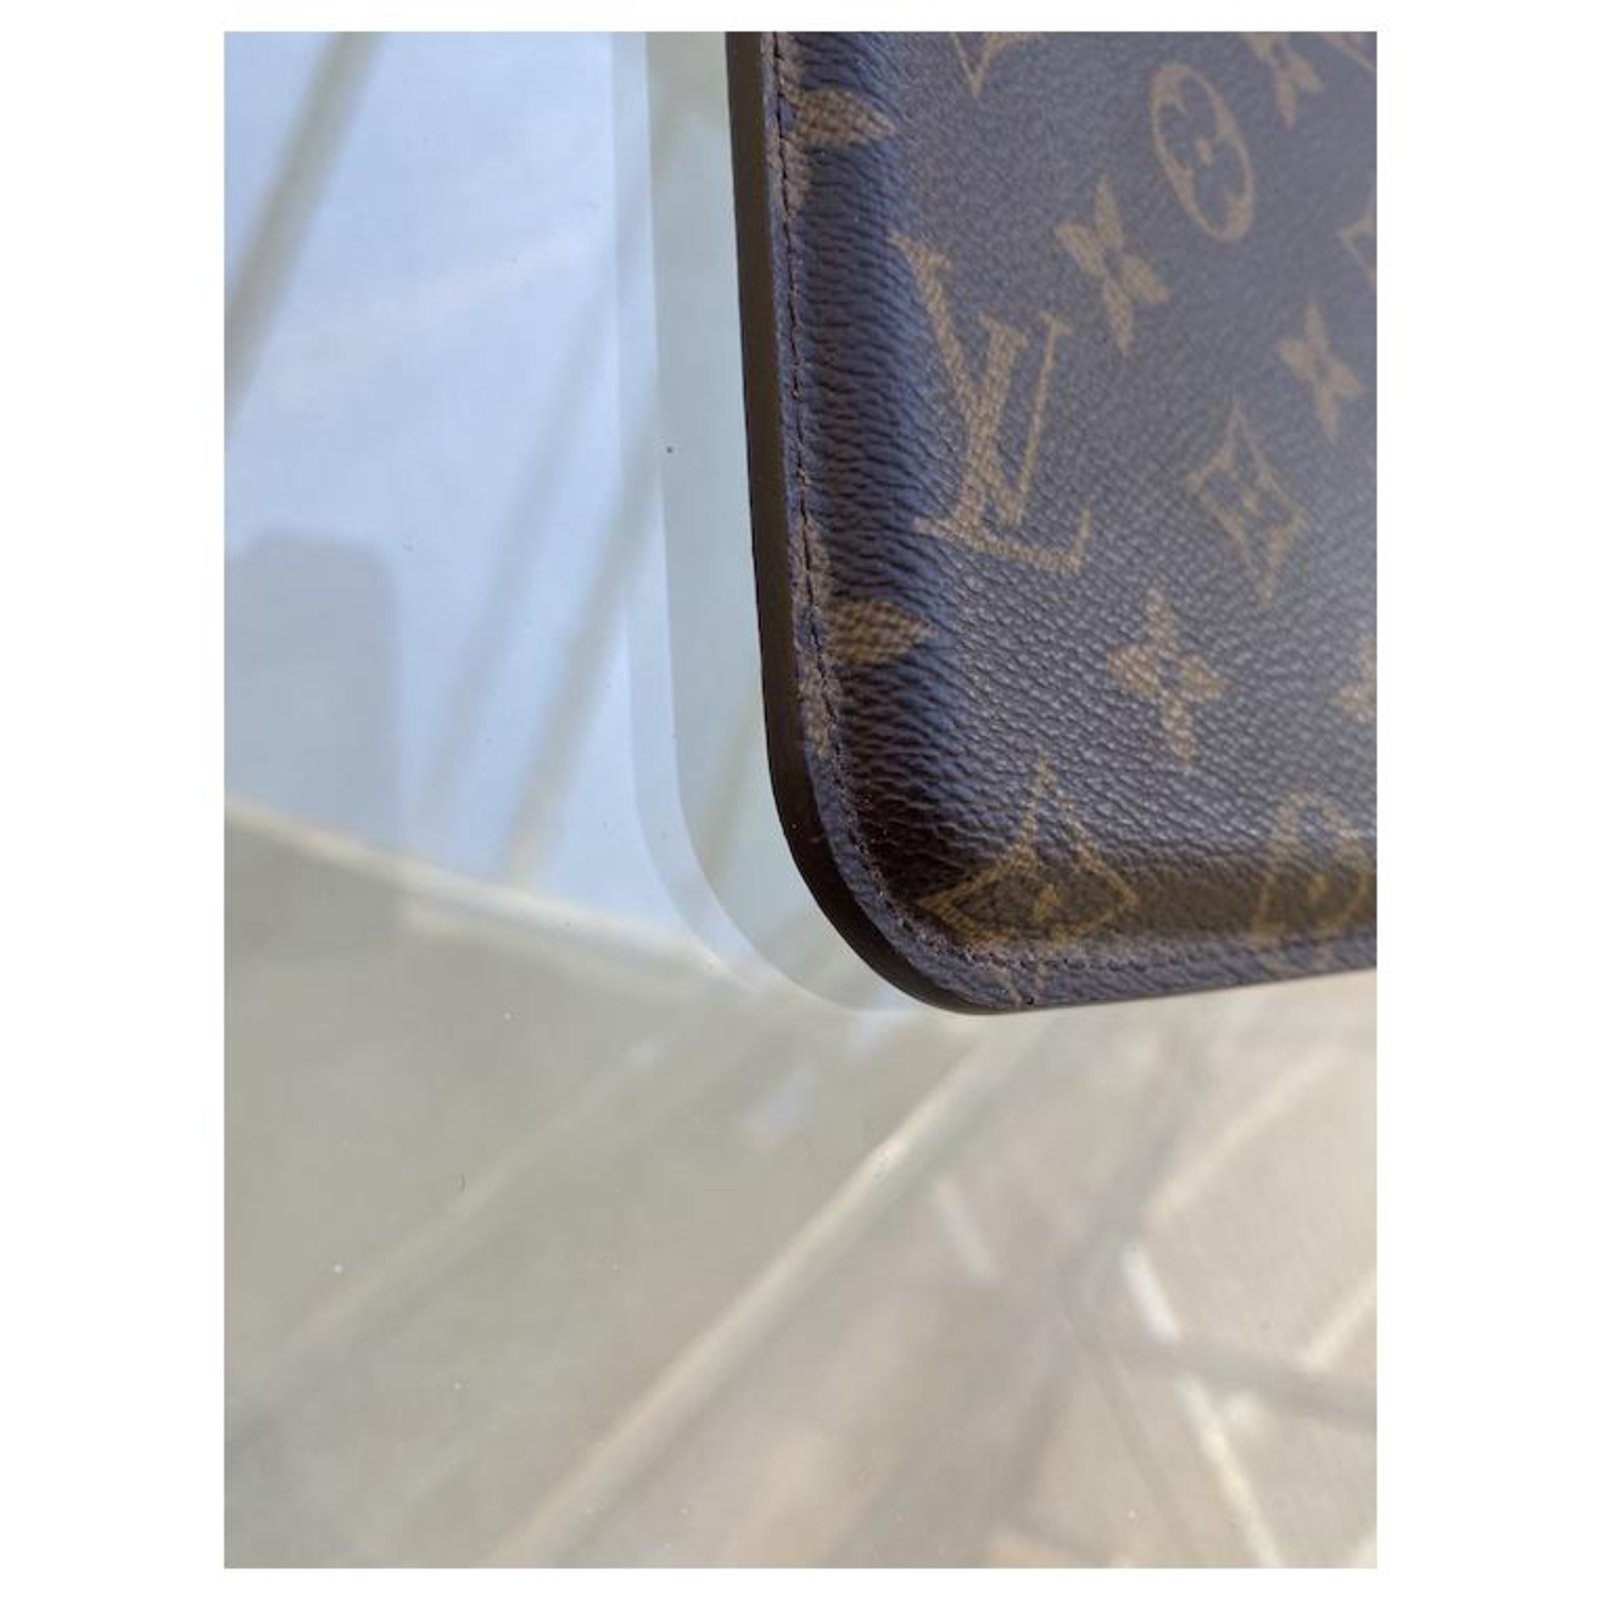 Louis Vuitton, Accessories, Louis Vuitton Ipad Case